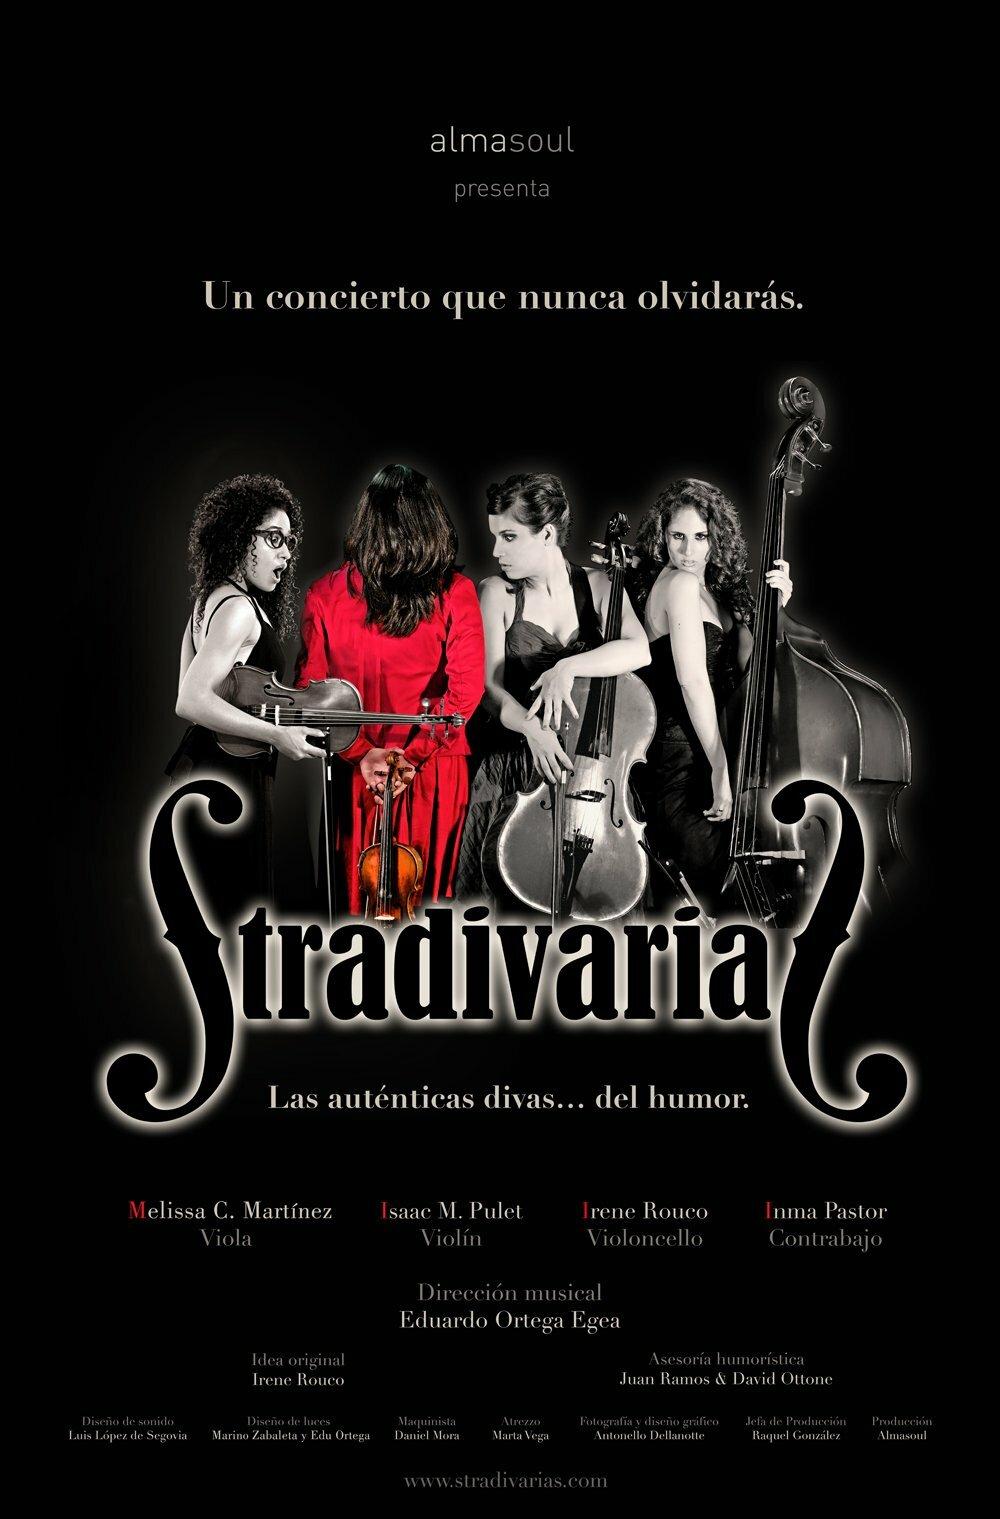 Stradivarias